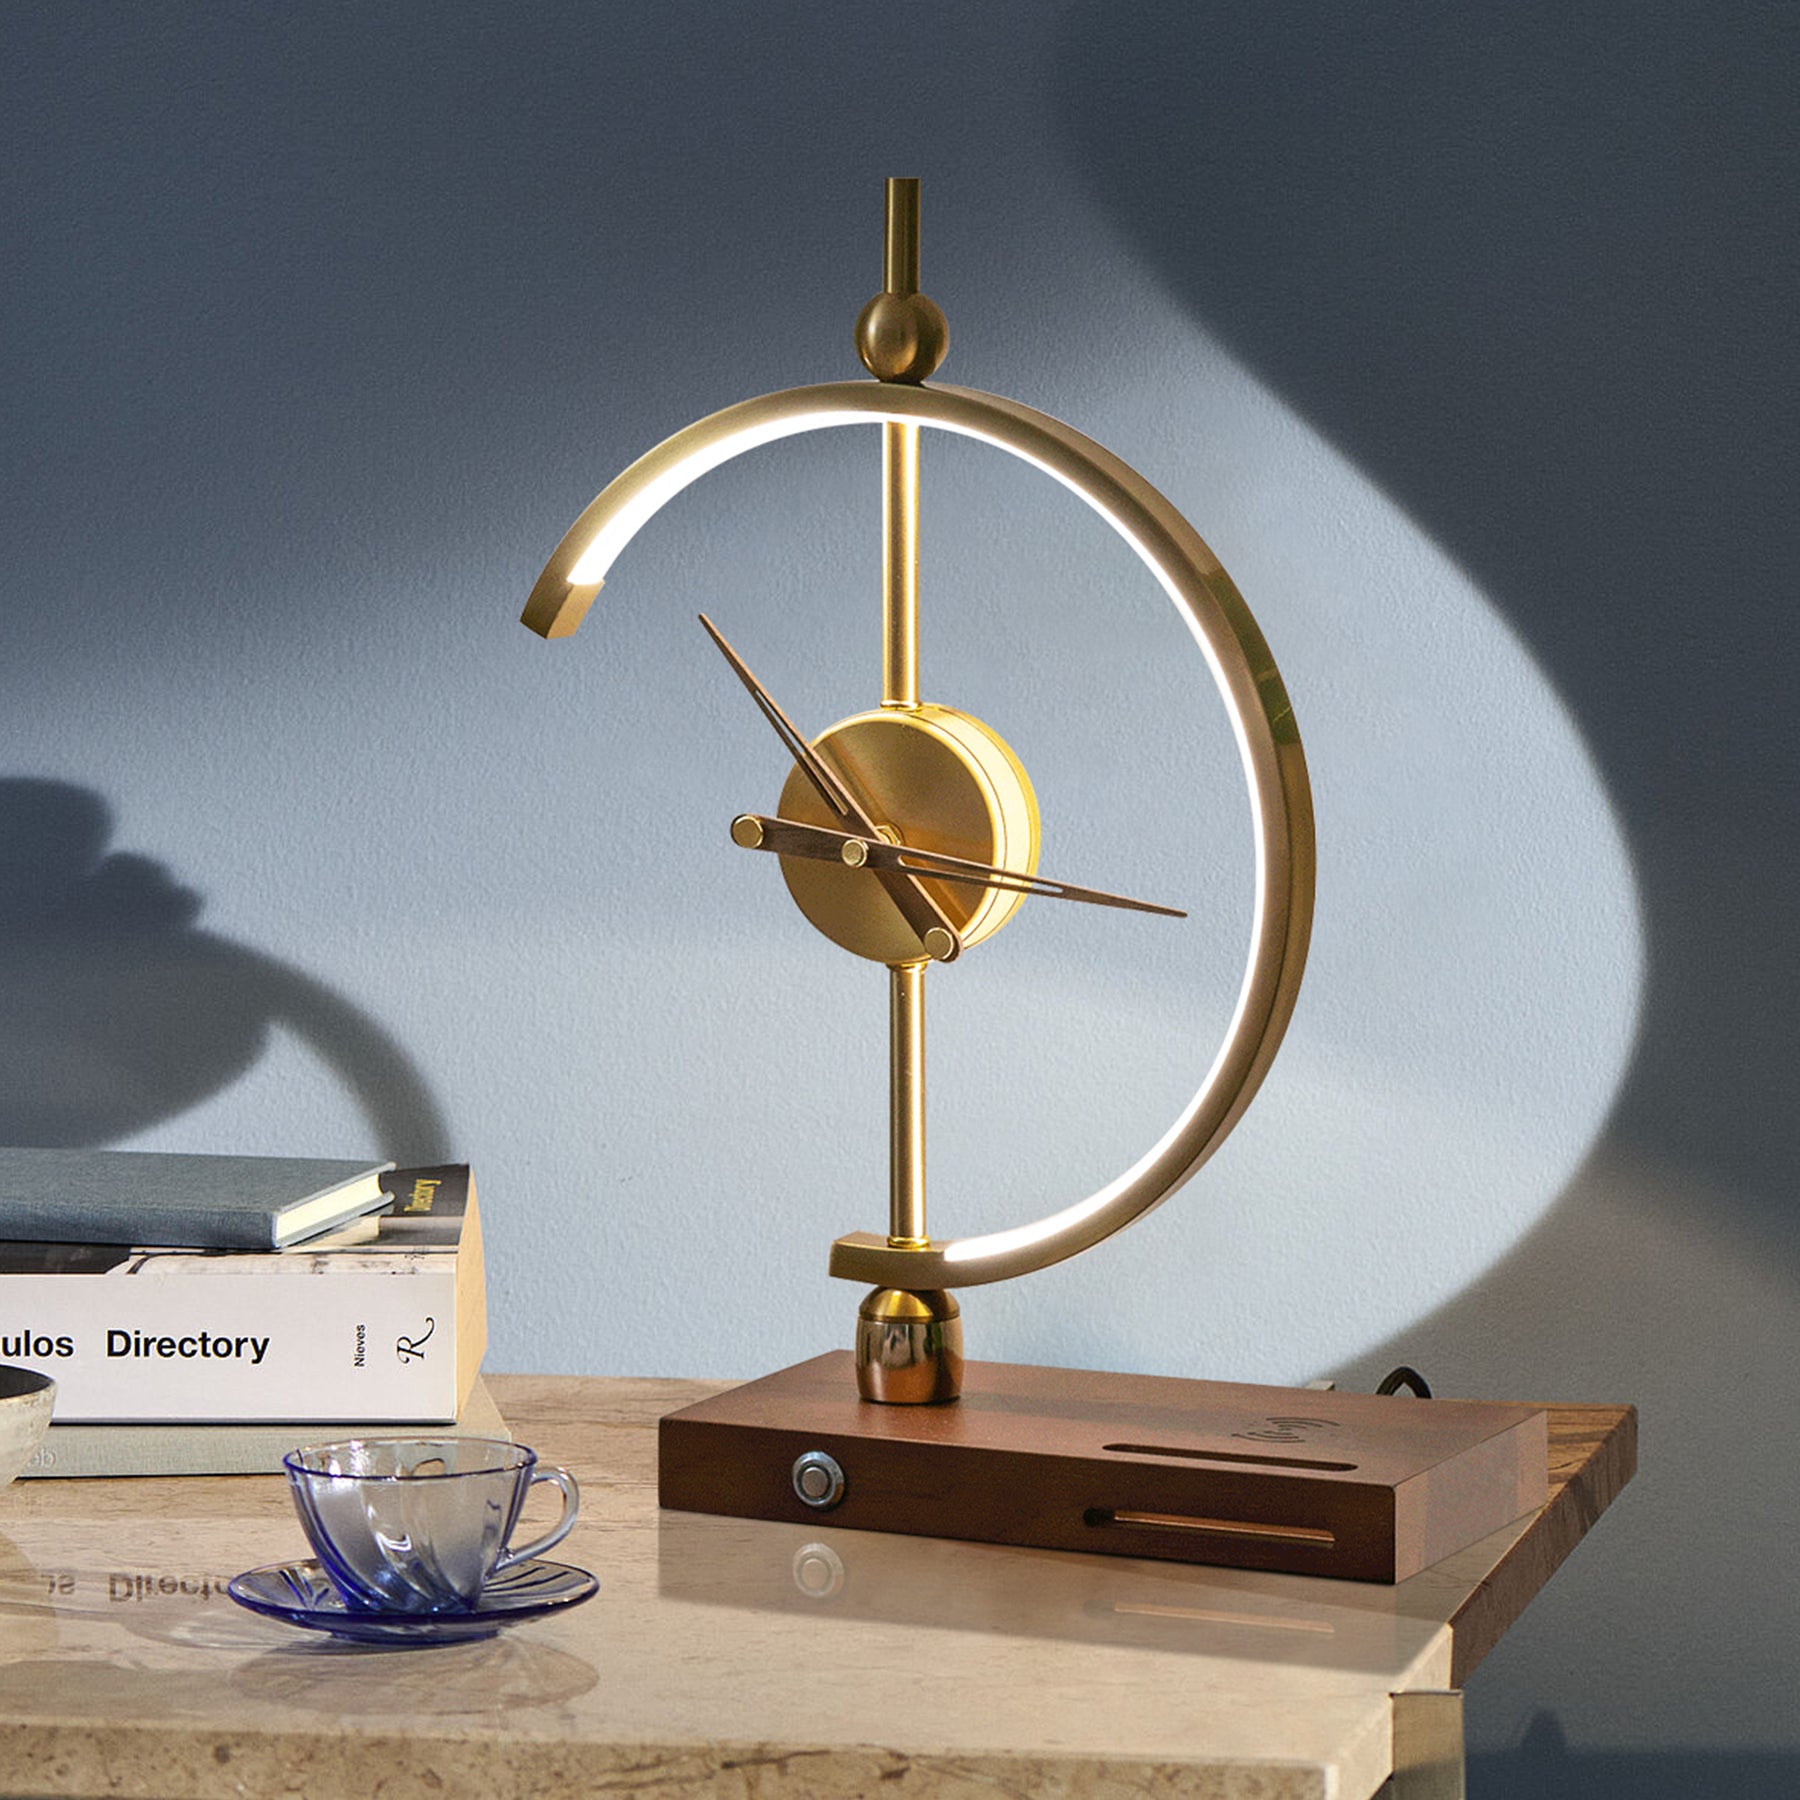 Palatino Clock Lamp